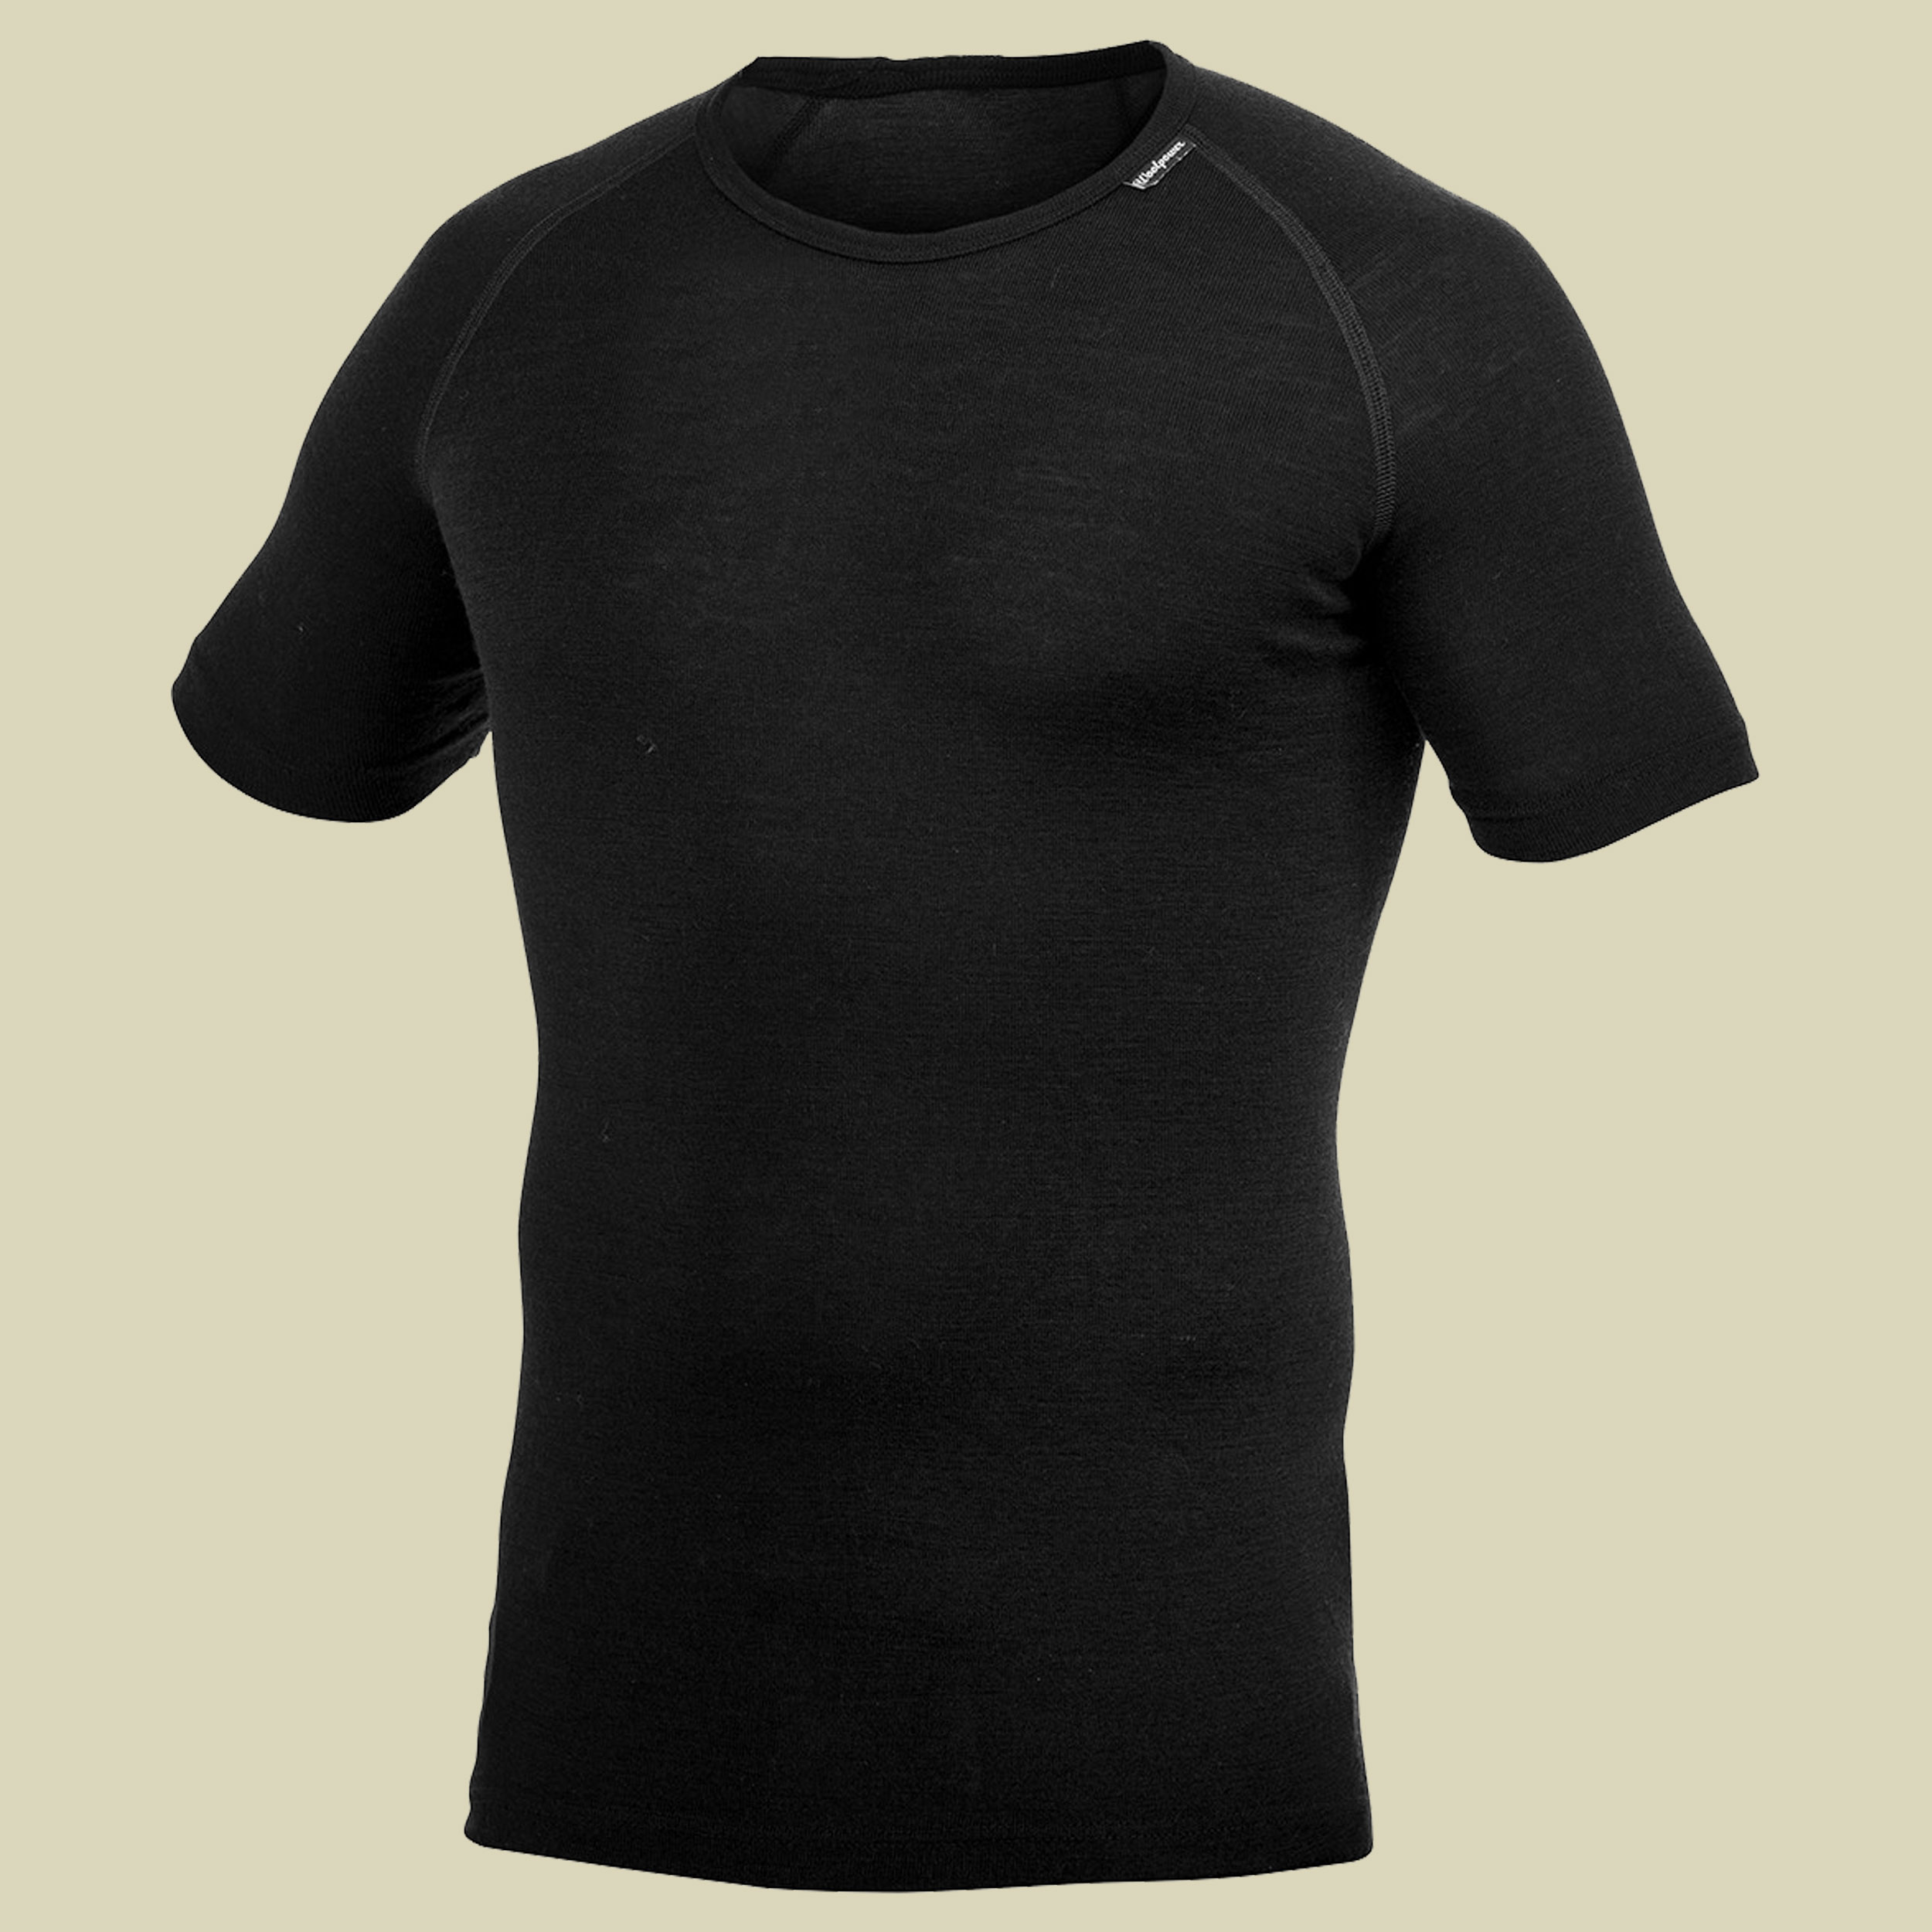 Lite T-Shirt XS schwarz - Farbe black